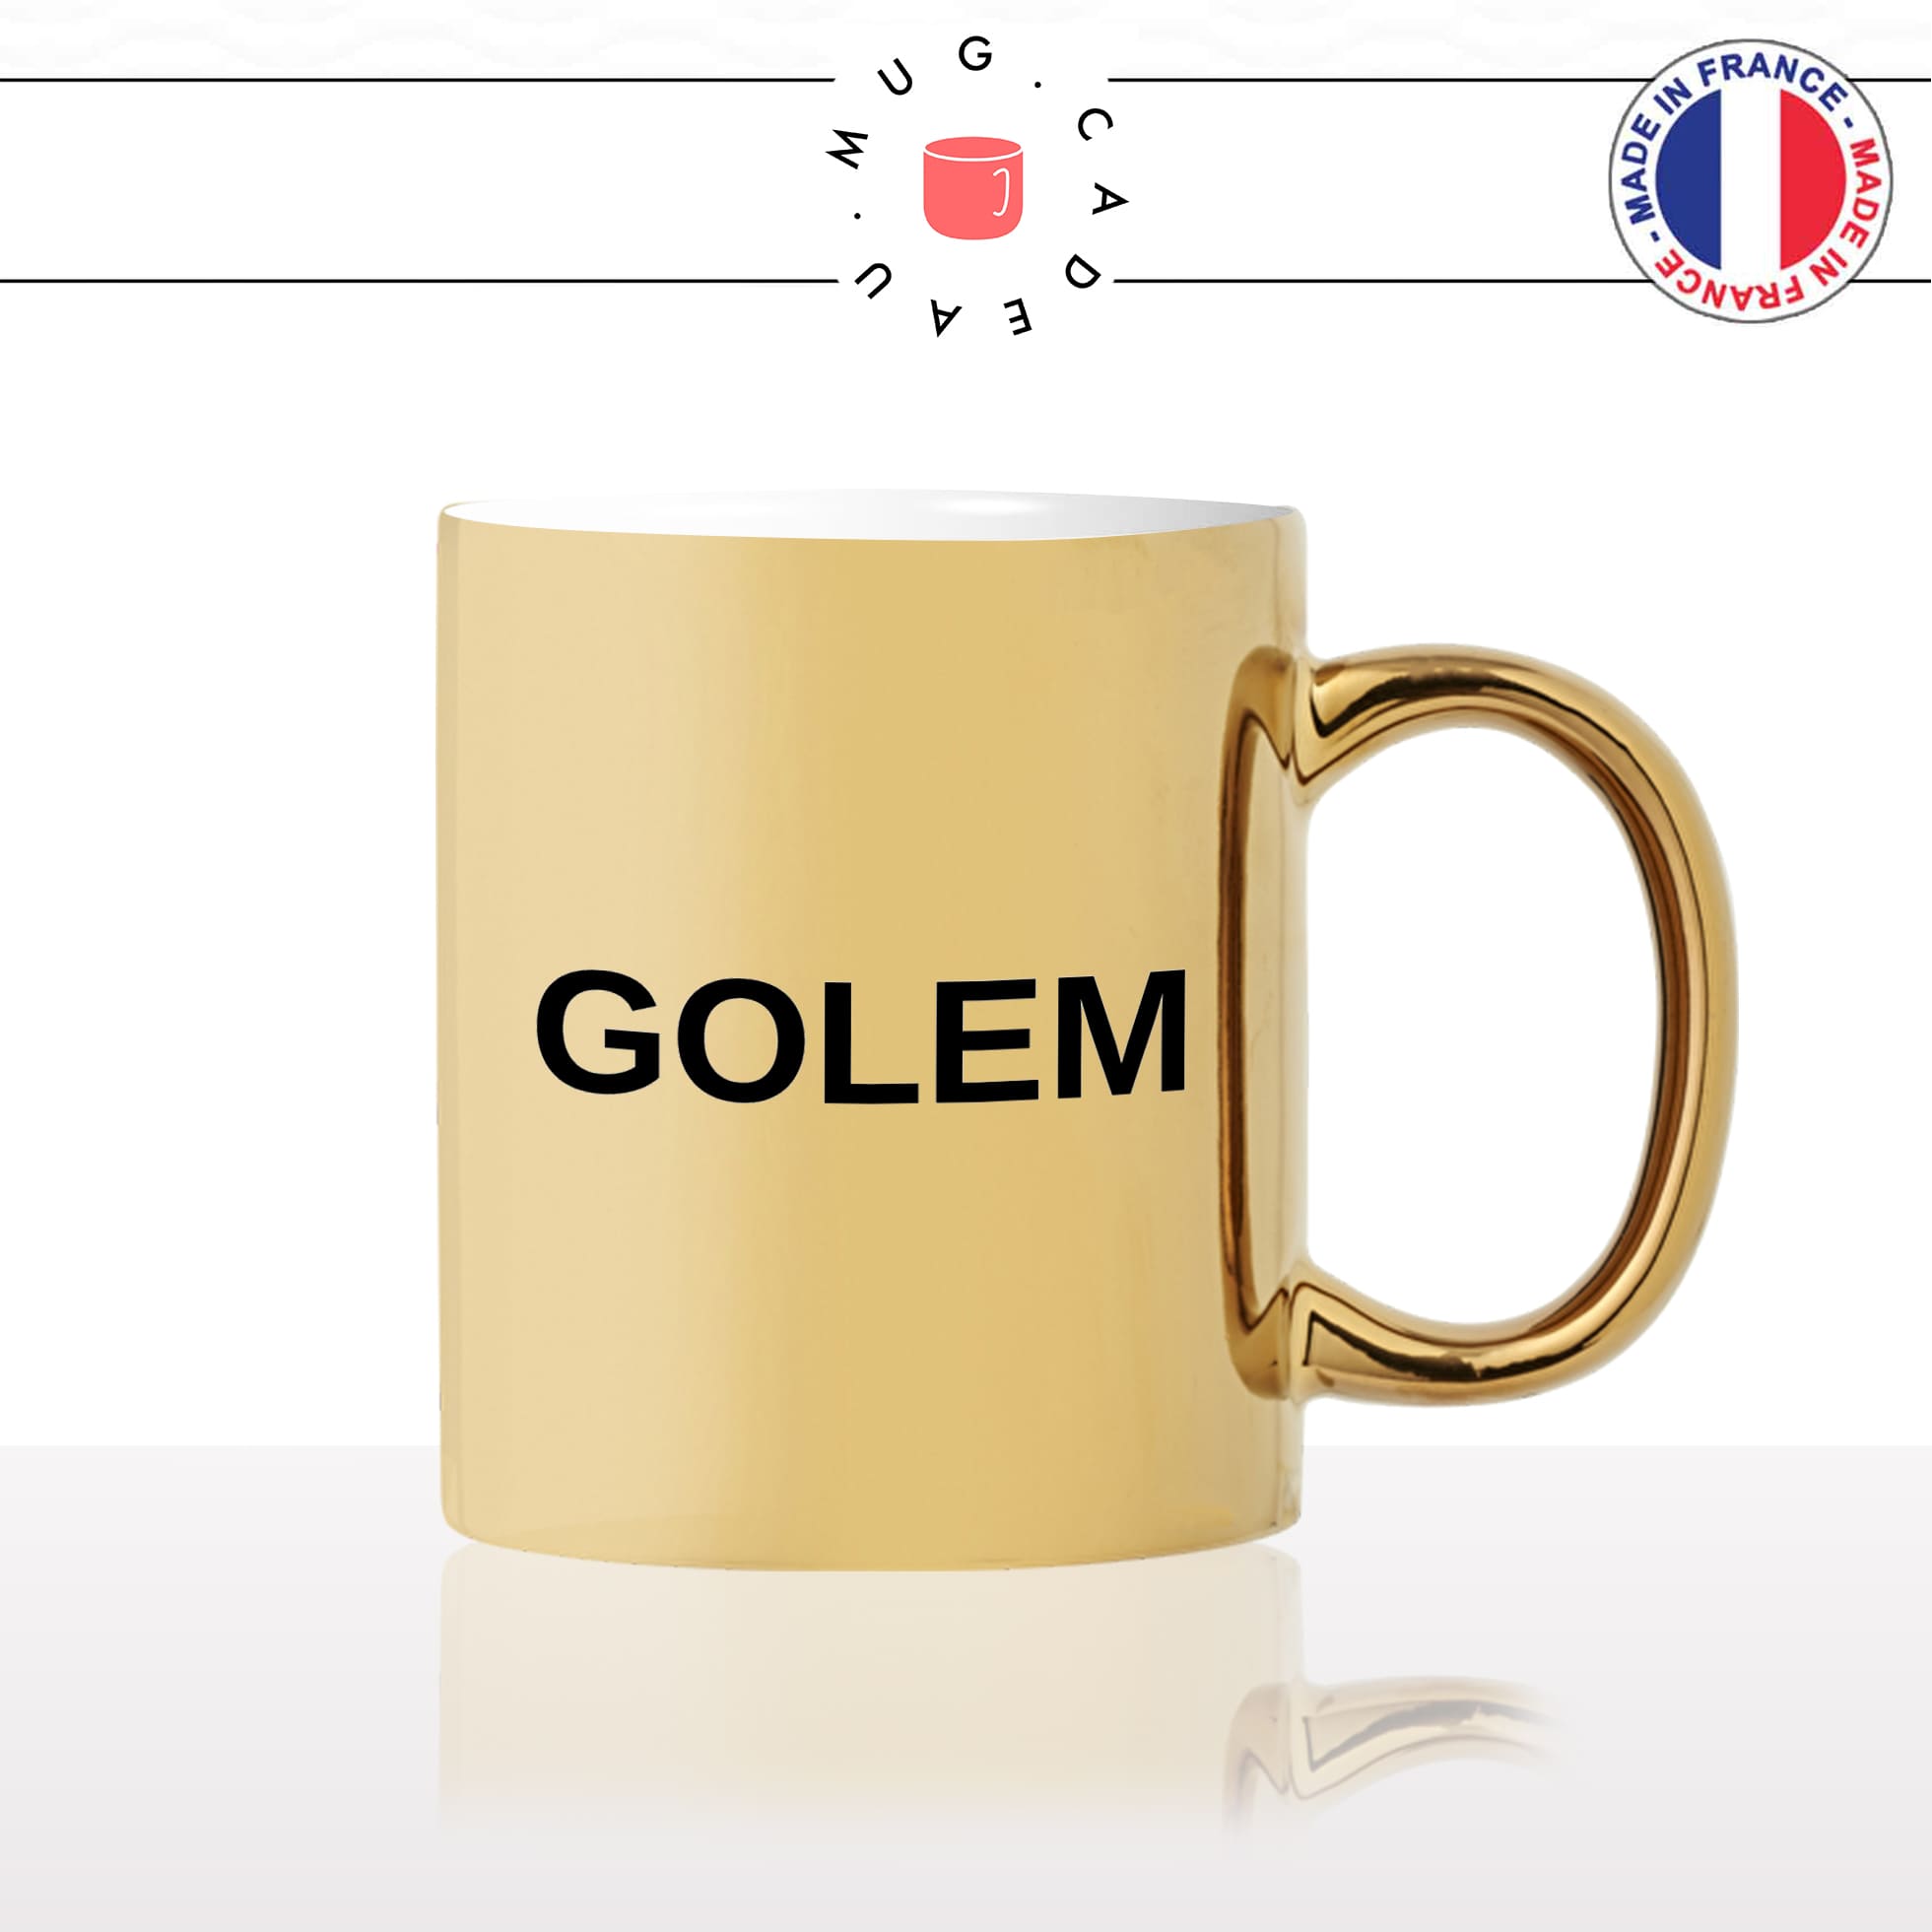 mug-or-doré-gold-tasse-idée-cadeau-personnalisé-golem-ordinateur-suiveur-mouton-meme-humour-golems-gauche-fun-offrir-original-2